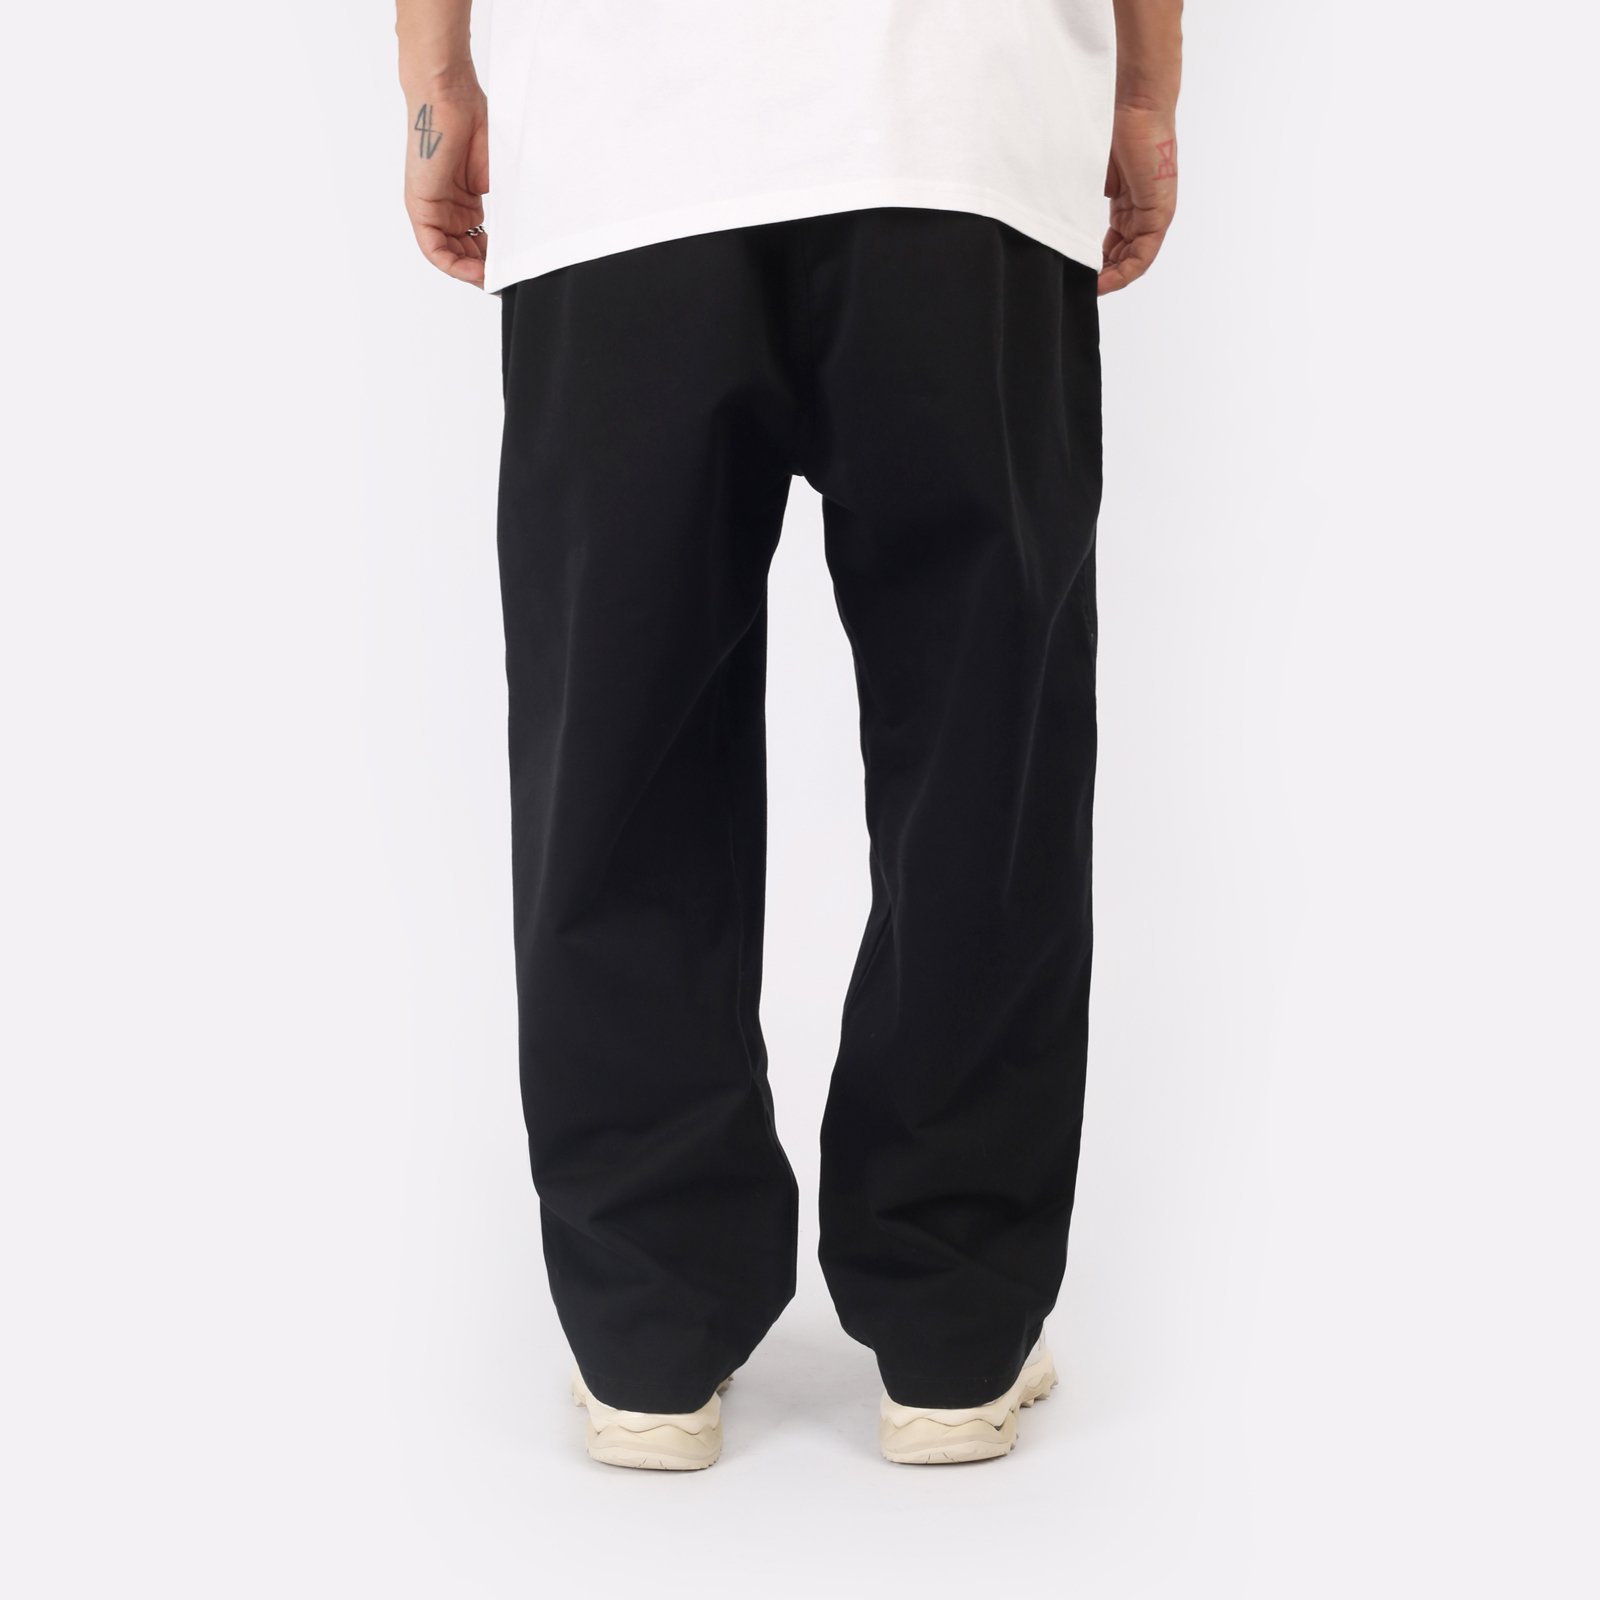 мужские брюки Carhartt WIP Marv Pant  (I033129-black)  - цена, описание, фото 2